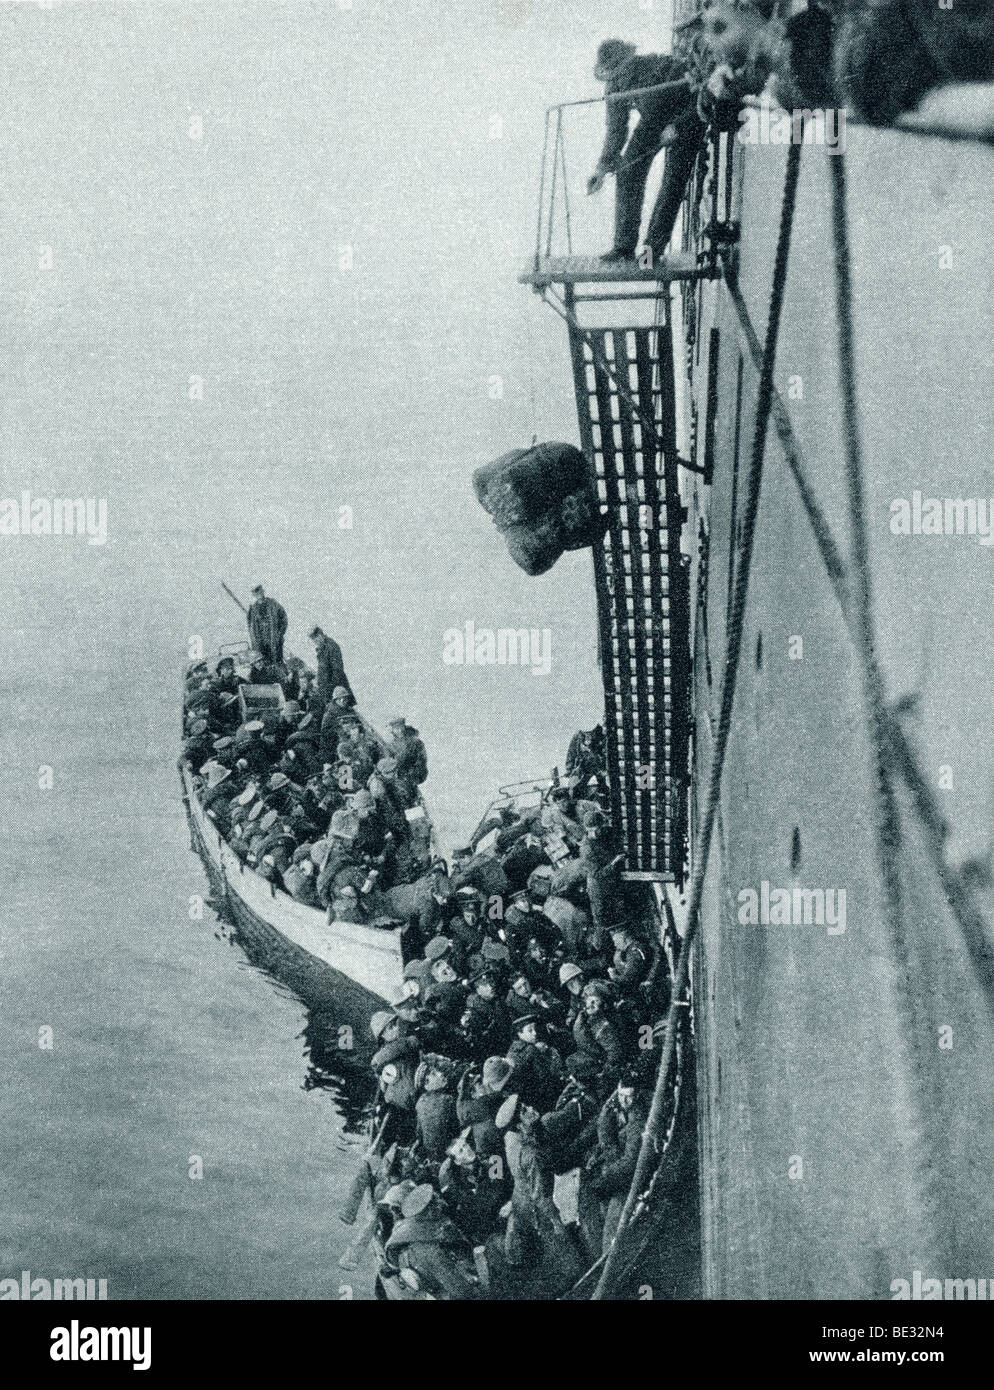 Truppen und speichert landete in Gallipoli von einem britischen Schiff im ersten Weltkrieg. Stockfoto